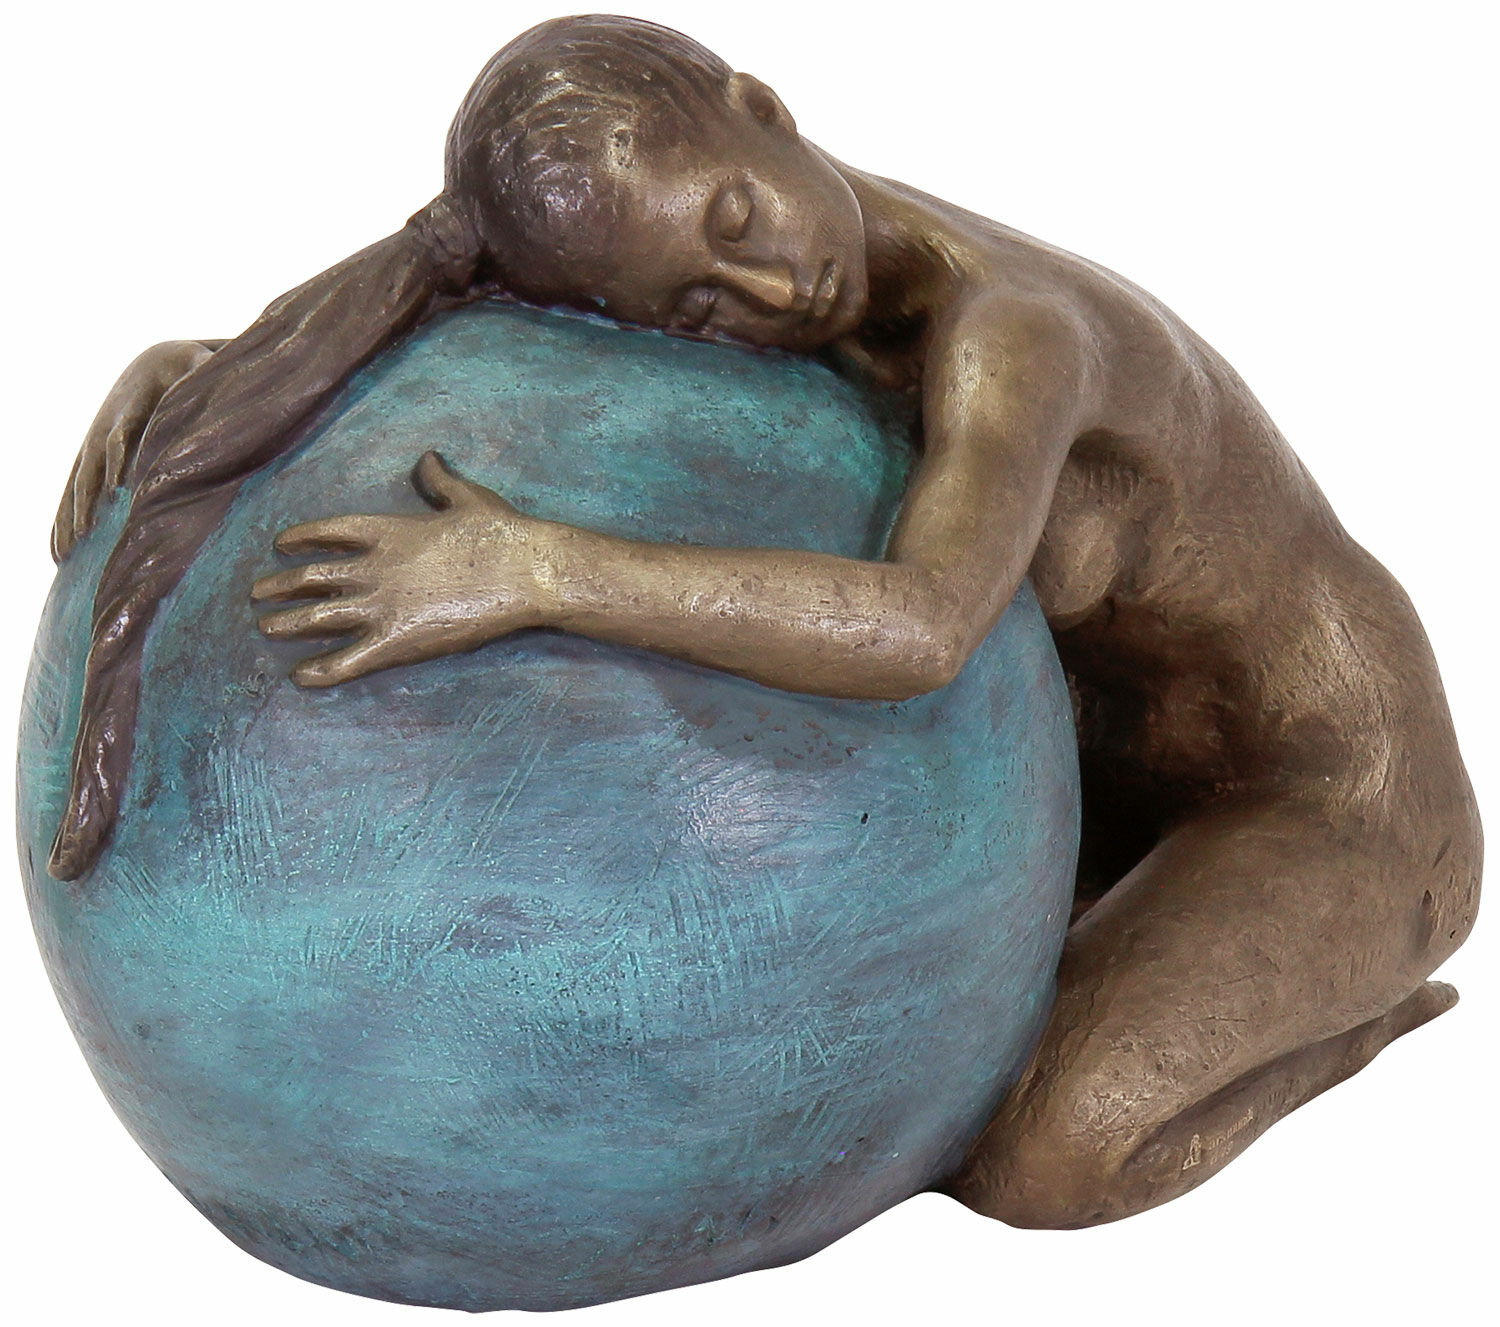 Sculpture "Embrace", bronze by Sorina von Keyserling